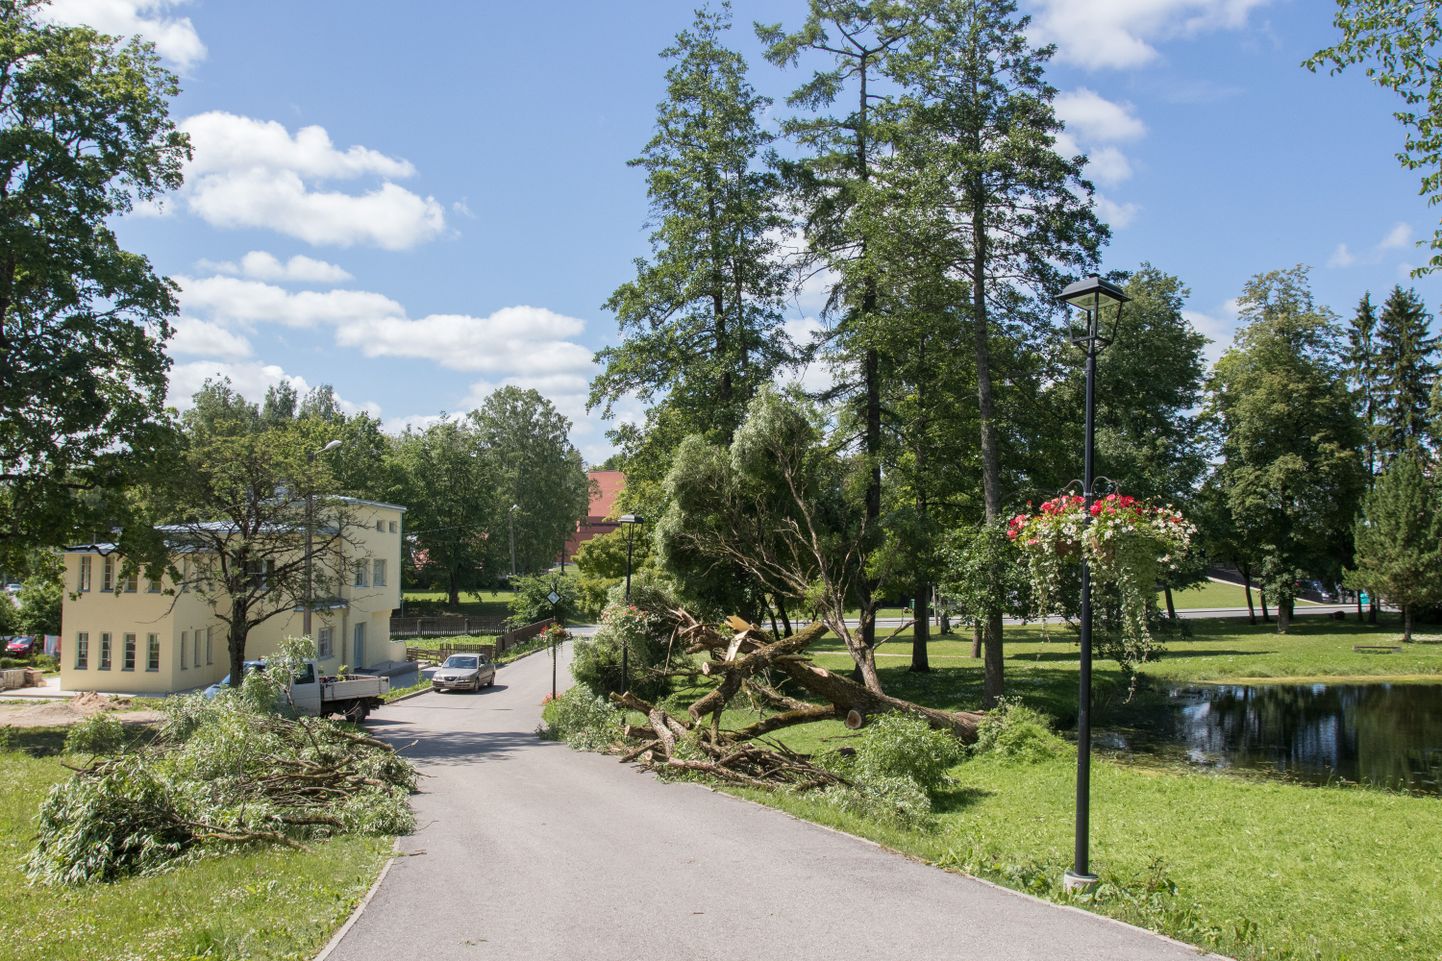 Pärastlõunaks oli lauluväljaku kõrval kasvanud remmelgas ümber kukkunud. Seejärel hakkas Viljandi Linnahoolduse töömees seda ära koristama.